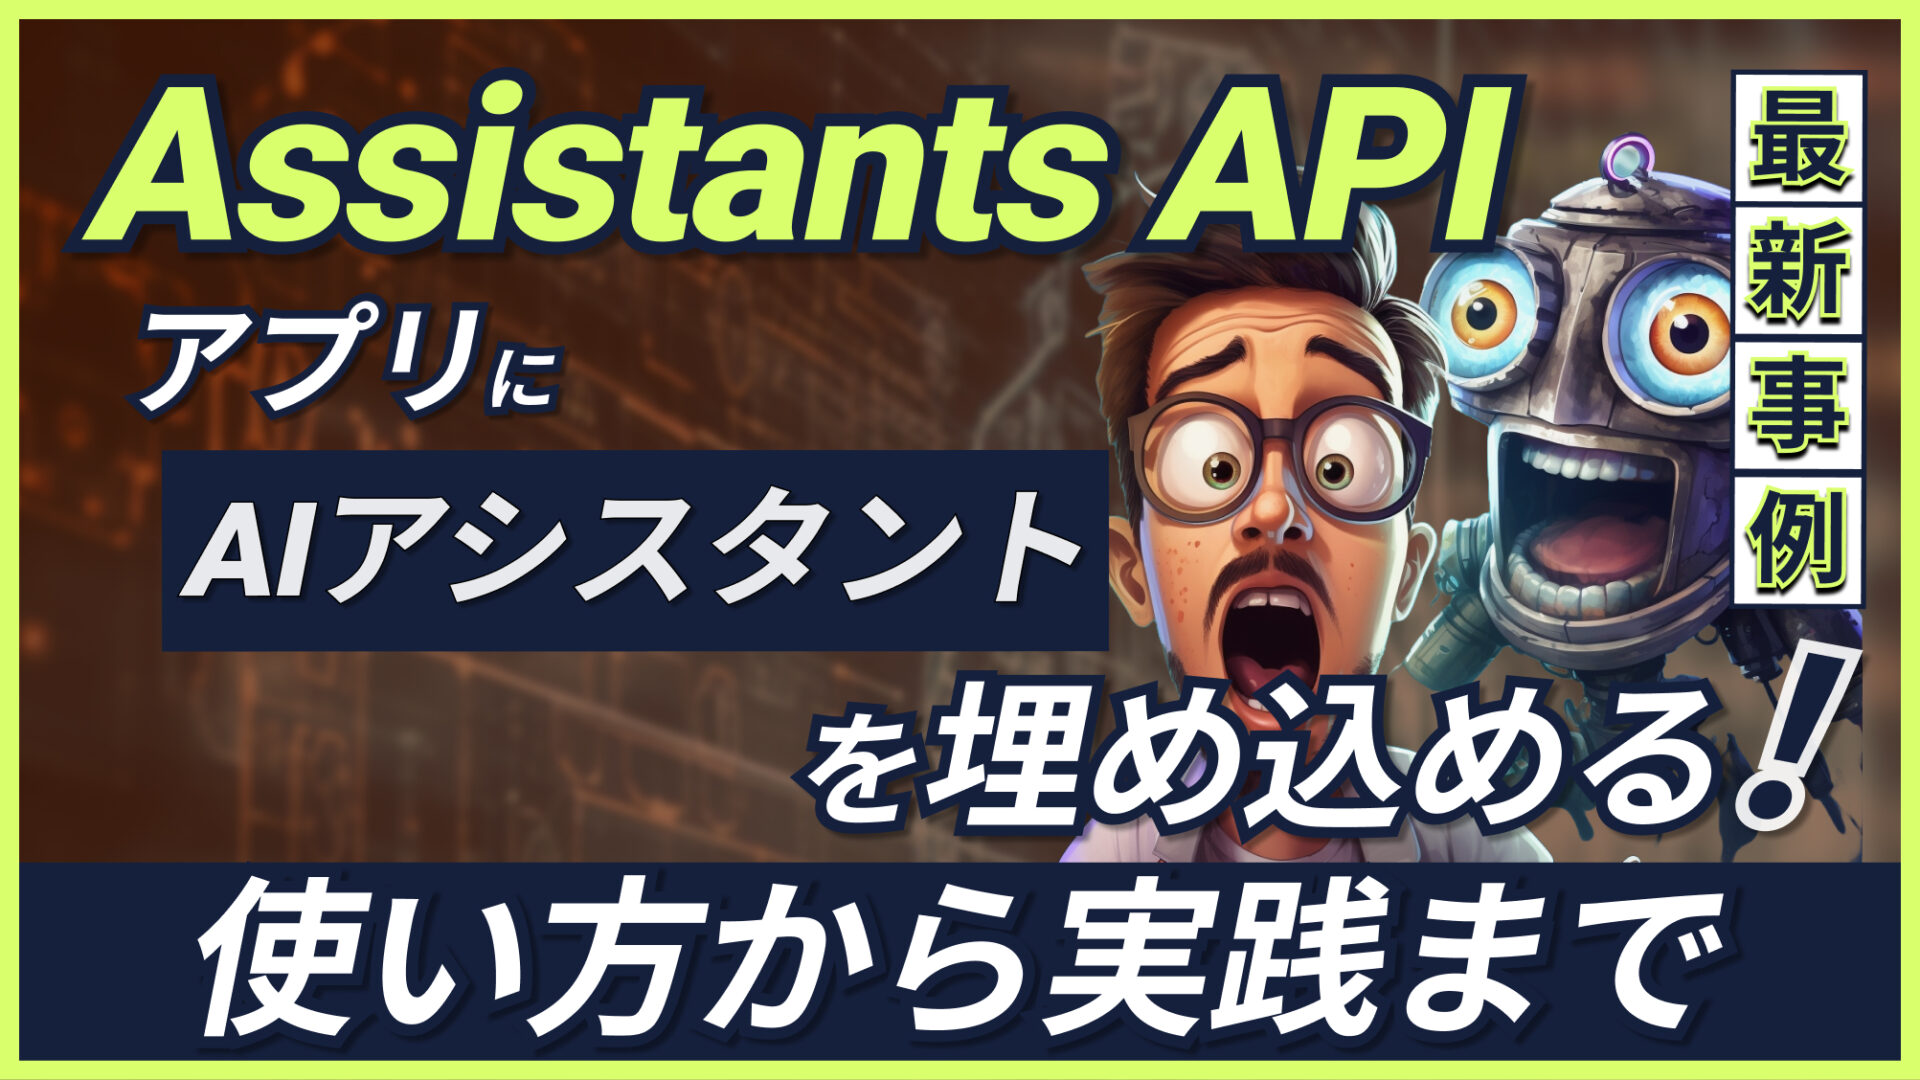 Assistants API】アプリに超優秀AIアシスタントを埋め込めるOpenAI最新